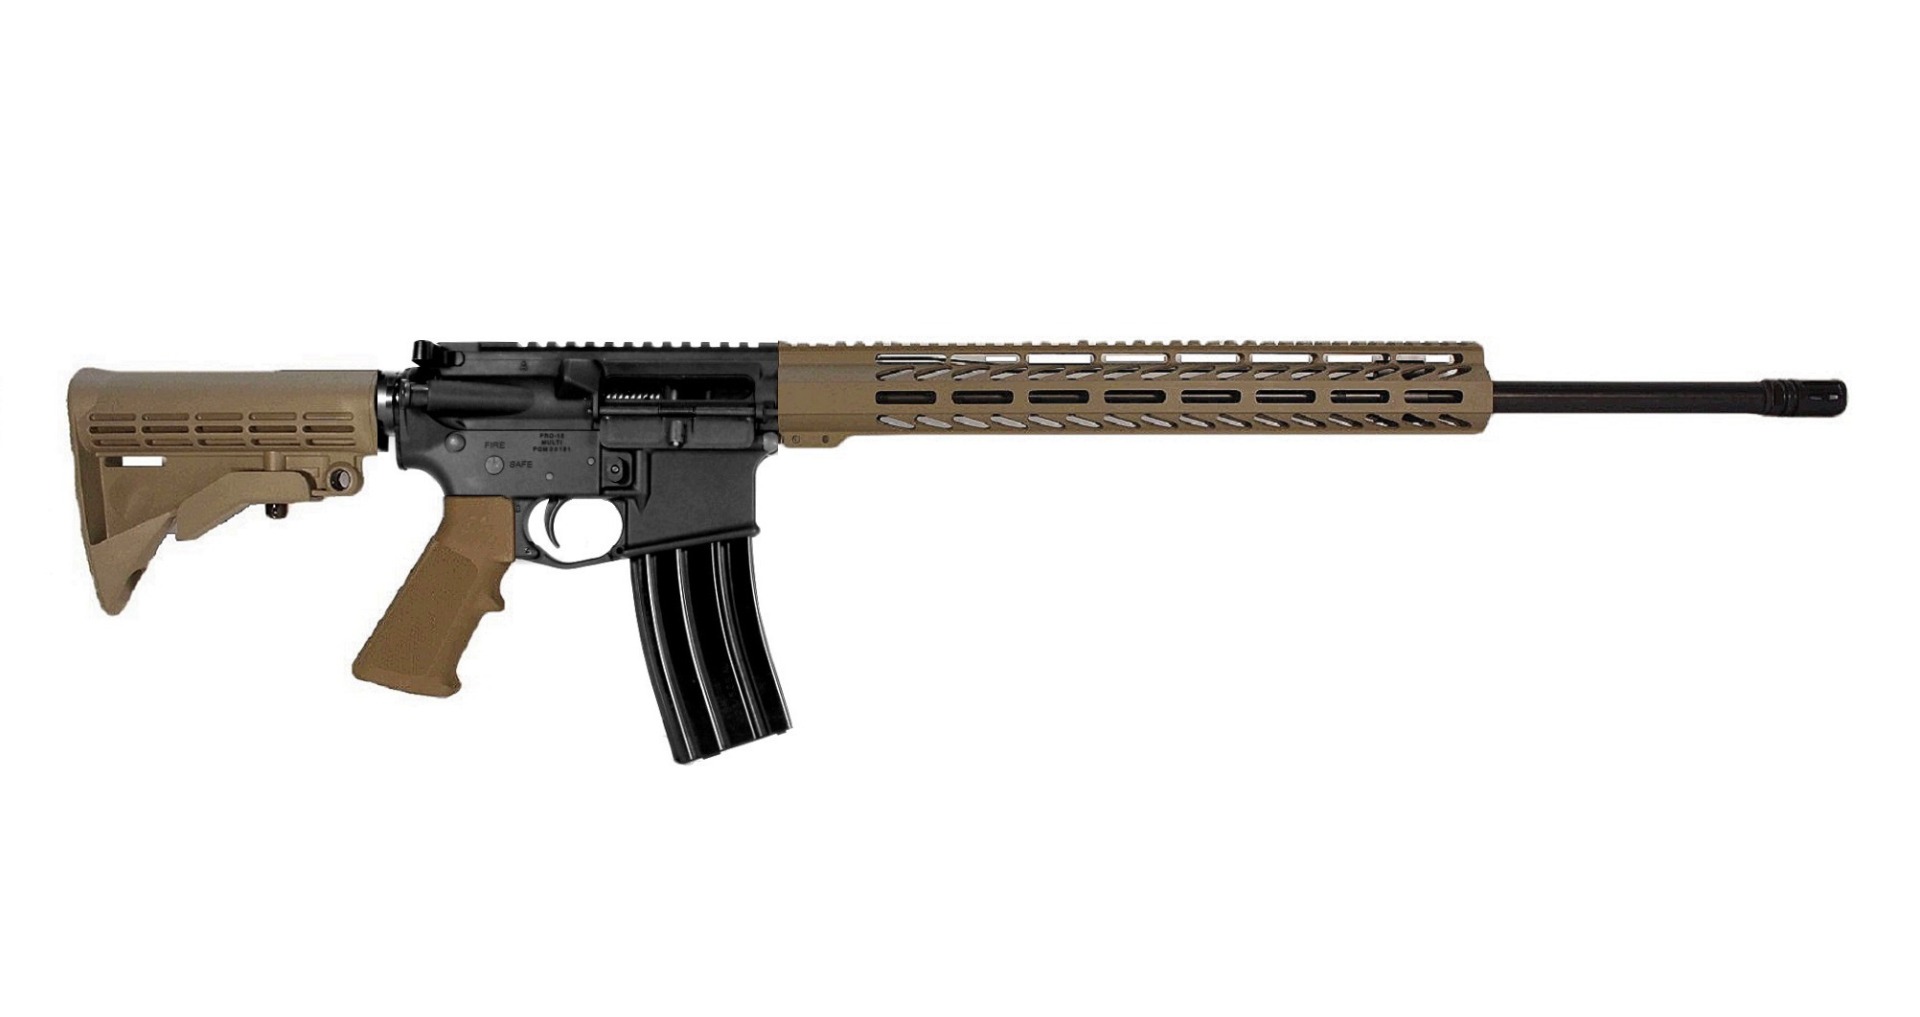 22 inch 6.8 SPC II AR Rifle in BLK/FDE